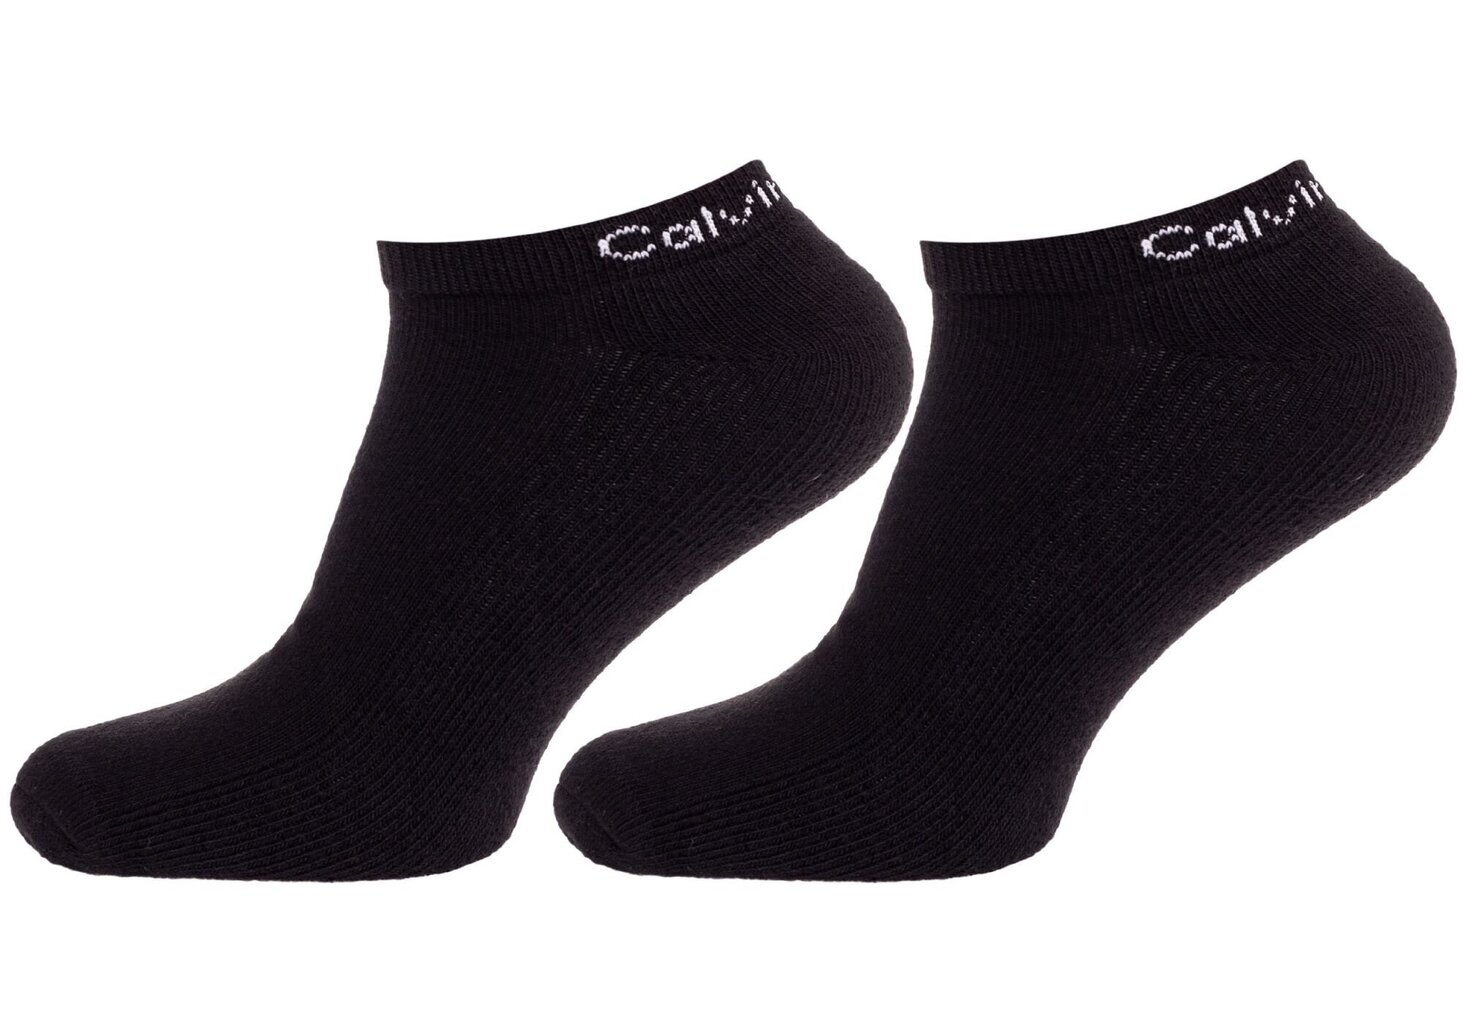 Vyriškos kojinės CALVIN KLEIN, 6 poros, juodos 701218720 001 39827 kaina ir informacija | Vyriškos kojinės | pigu.lt